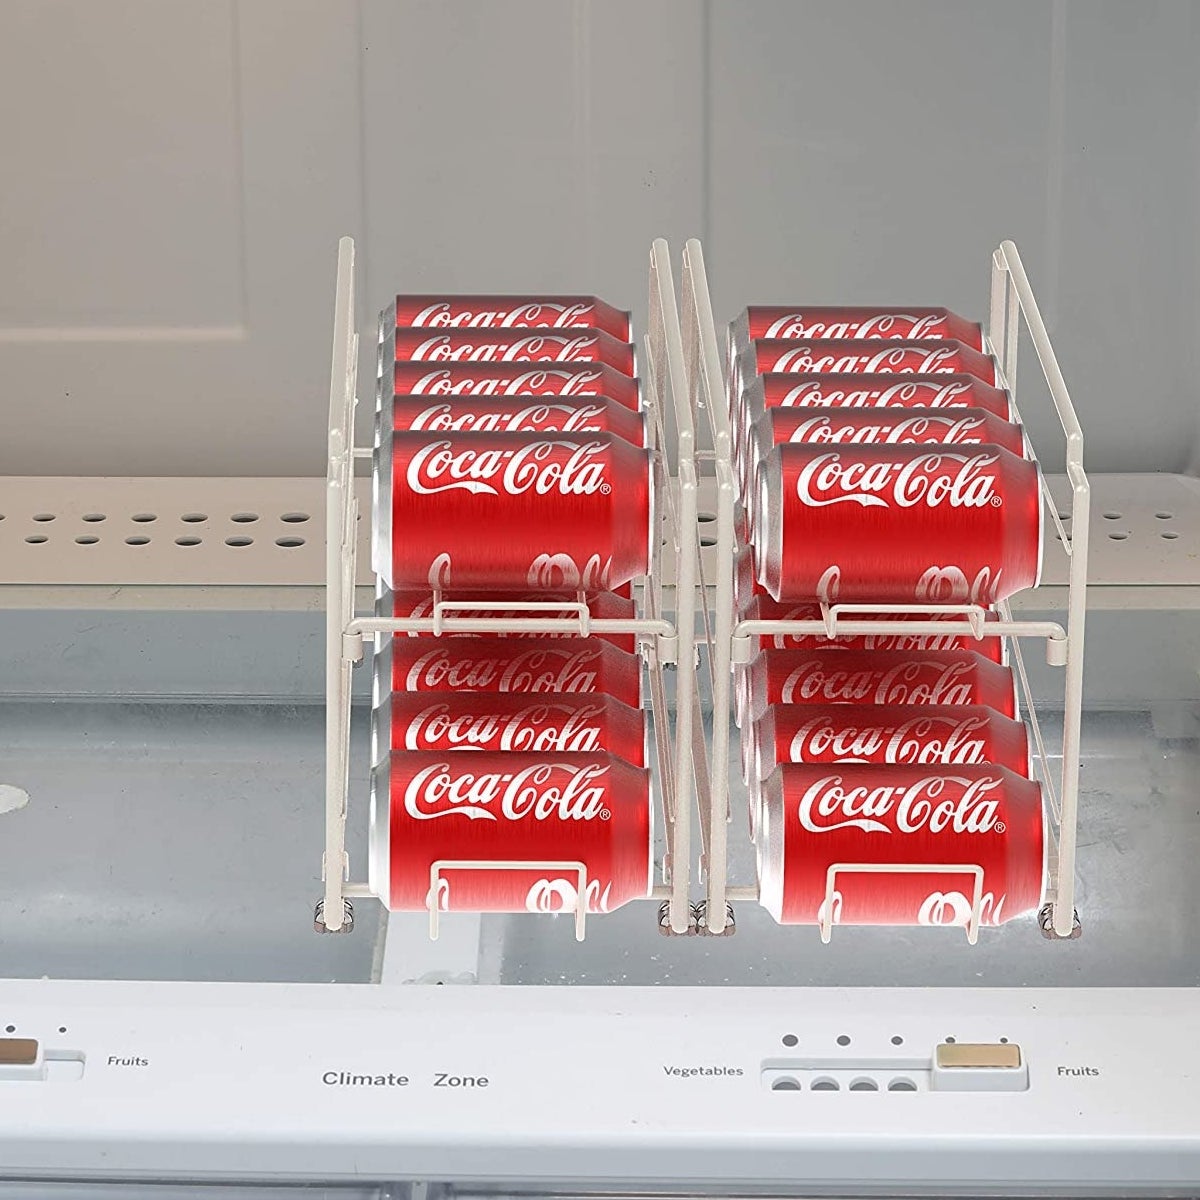 The pop can dispenser inside an empty fridge